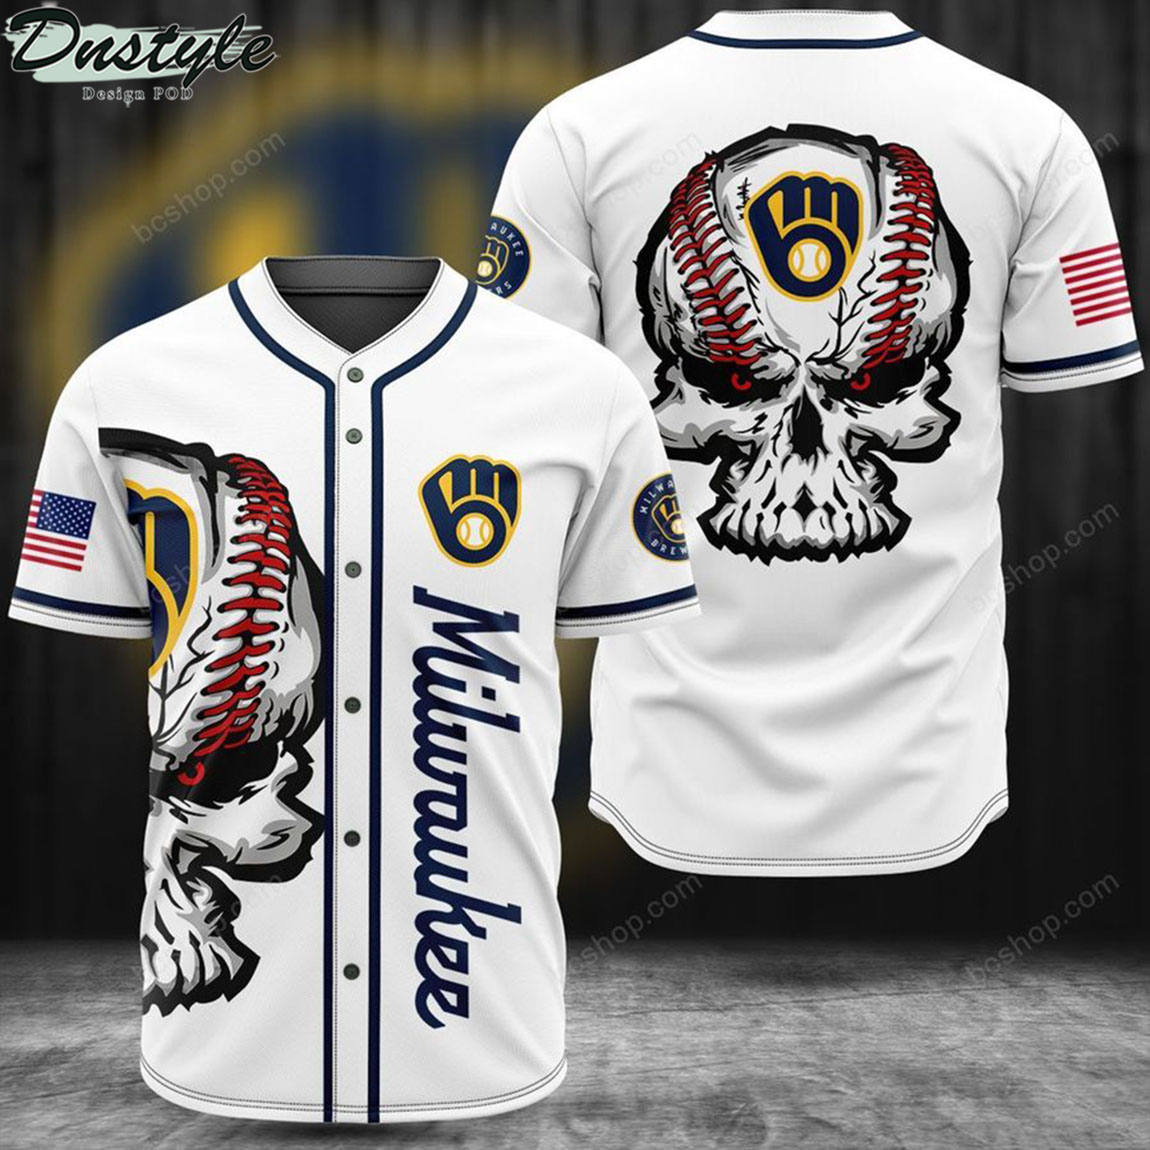 Milwaukee skull baseball jersey 1